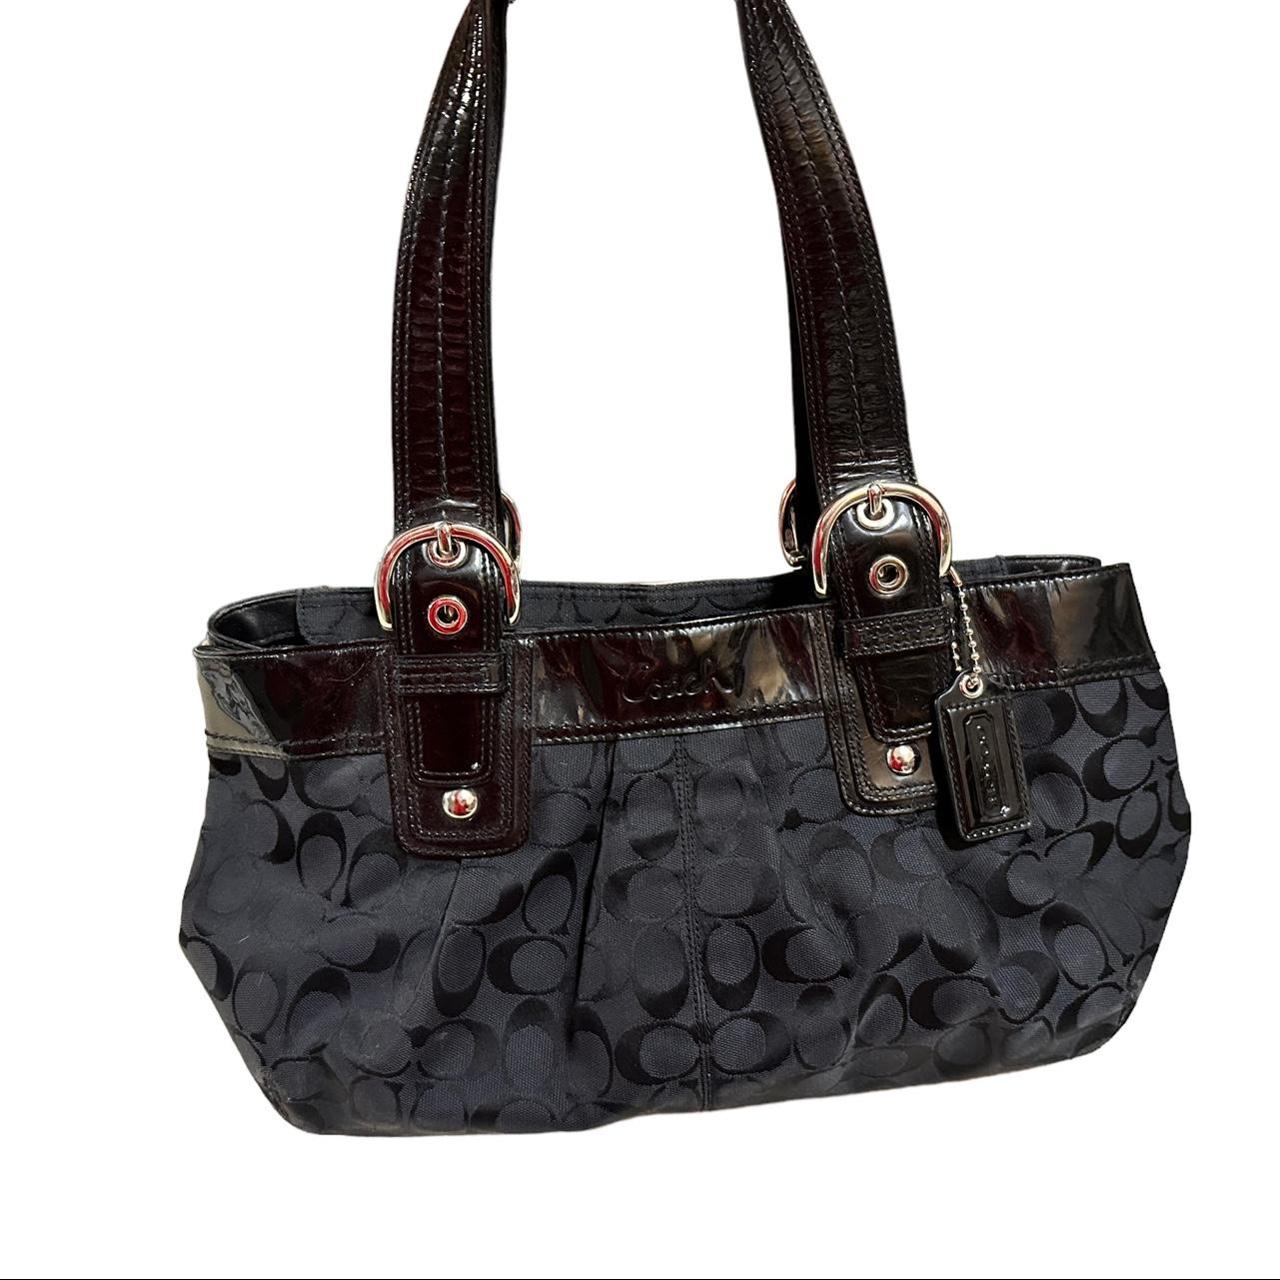 Black Cotton Bags, Handbags & Purses | COACH® Outlet